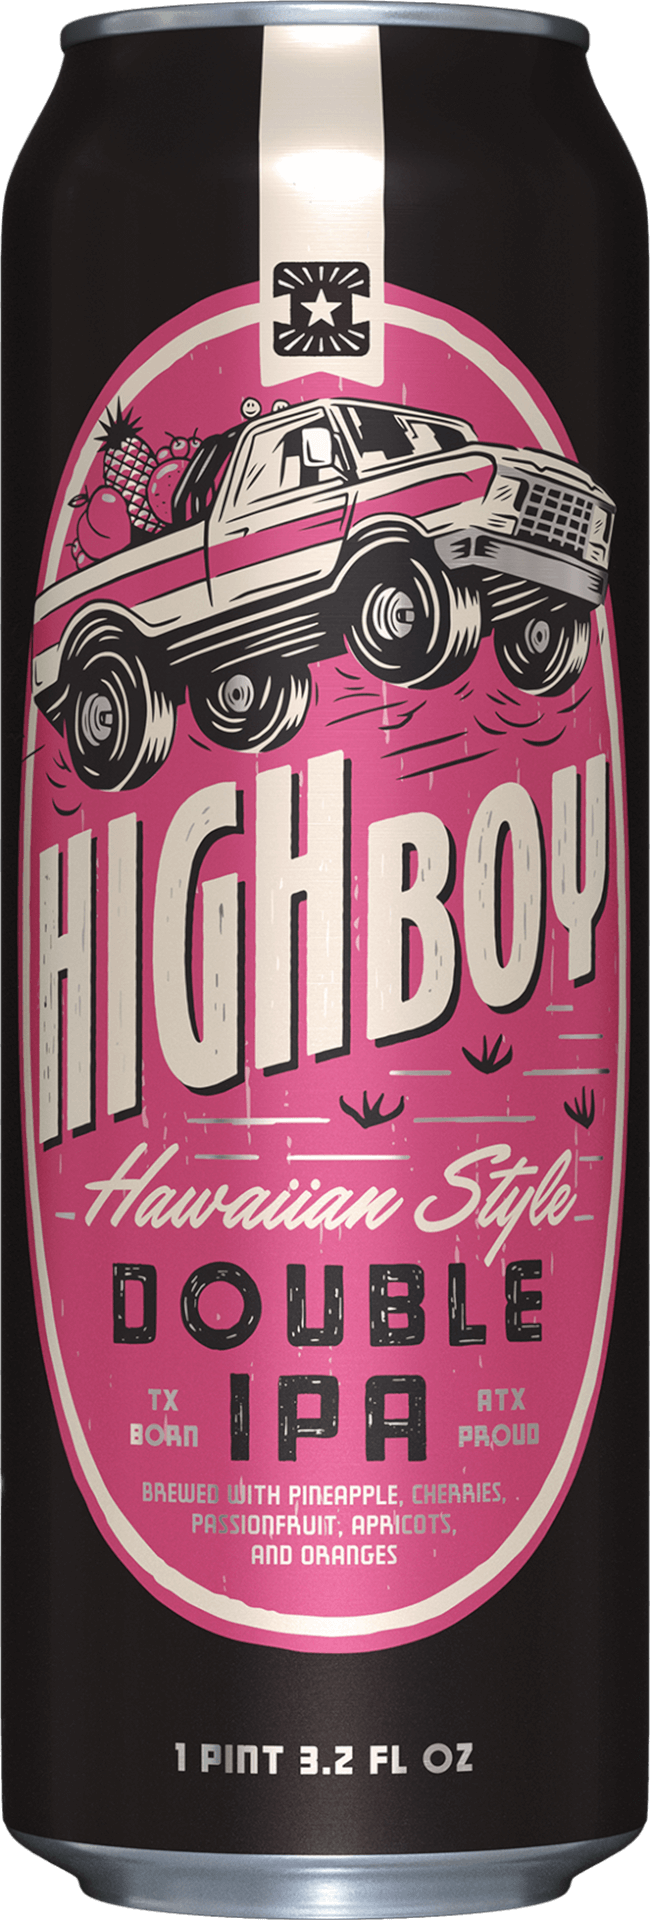 Highboy: Hawaiian